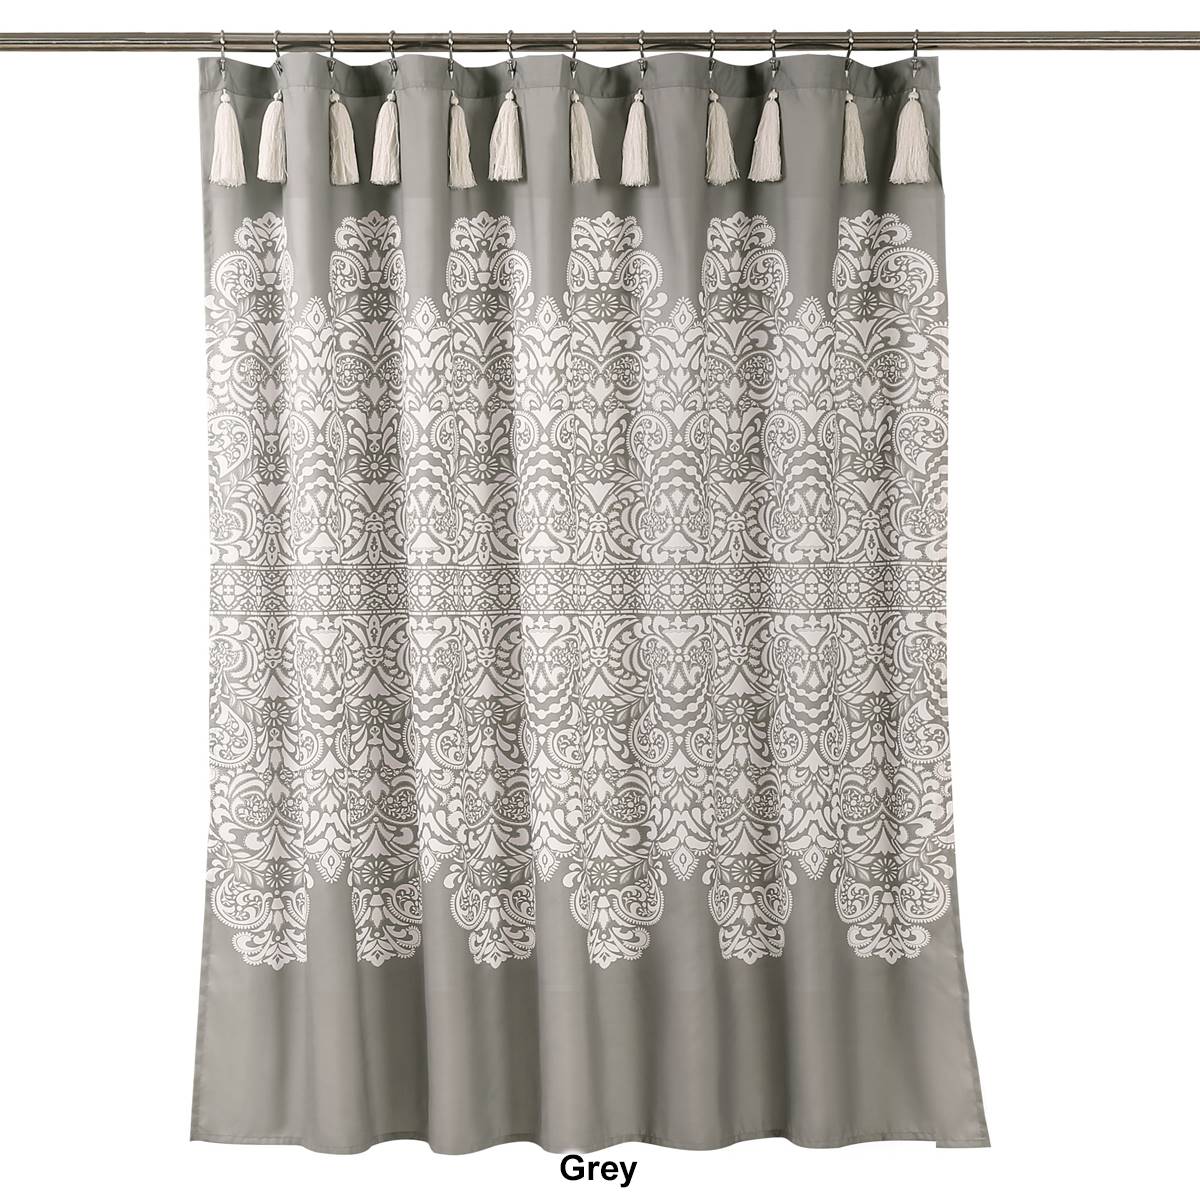 Lush Decor(R) Boho Medallion Shower Curtain